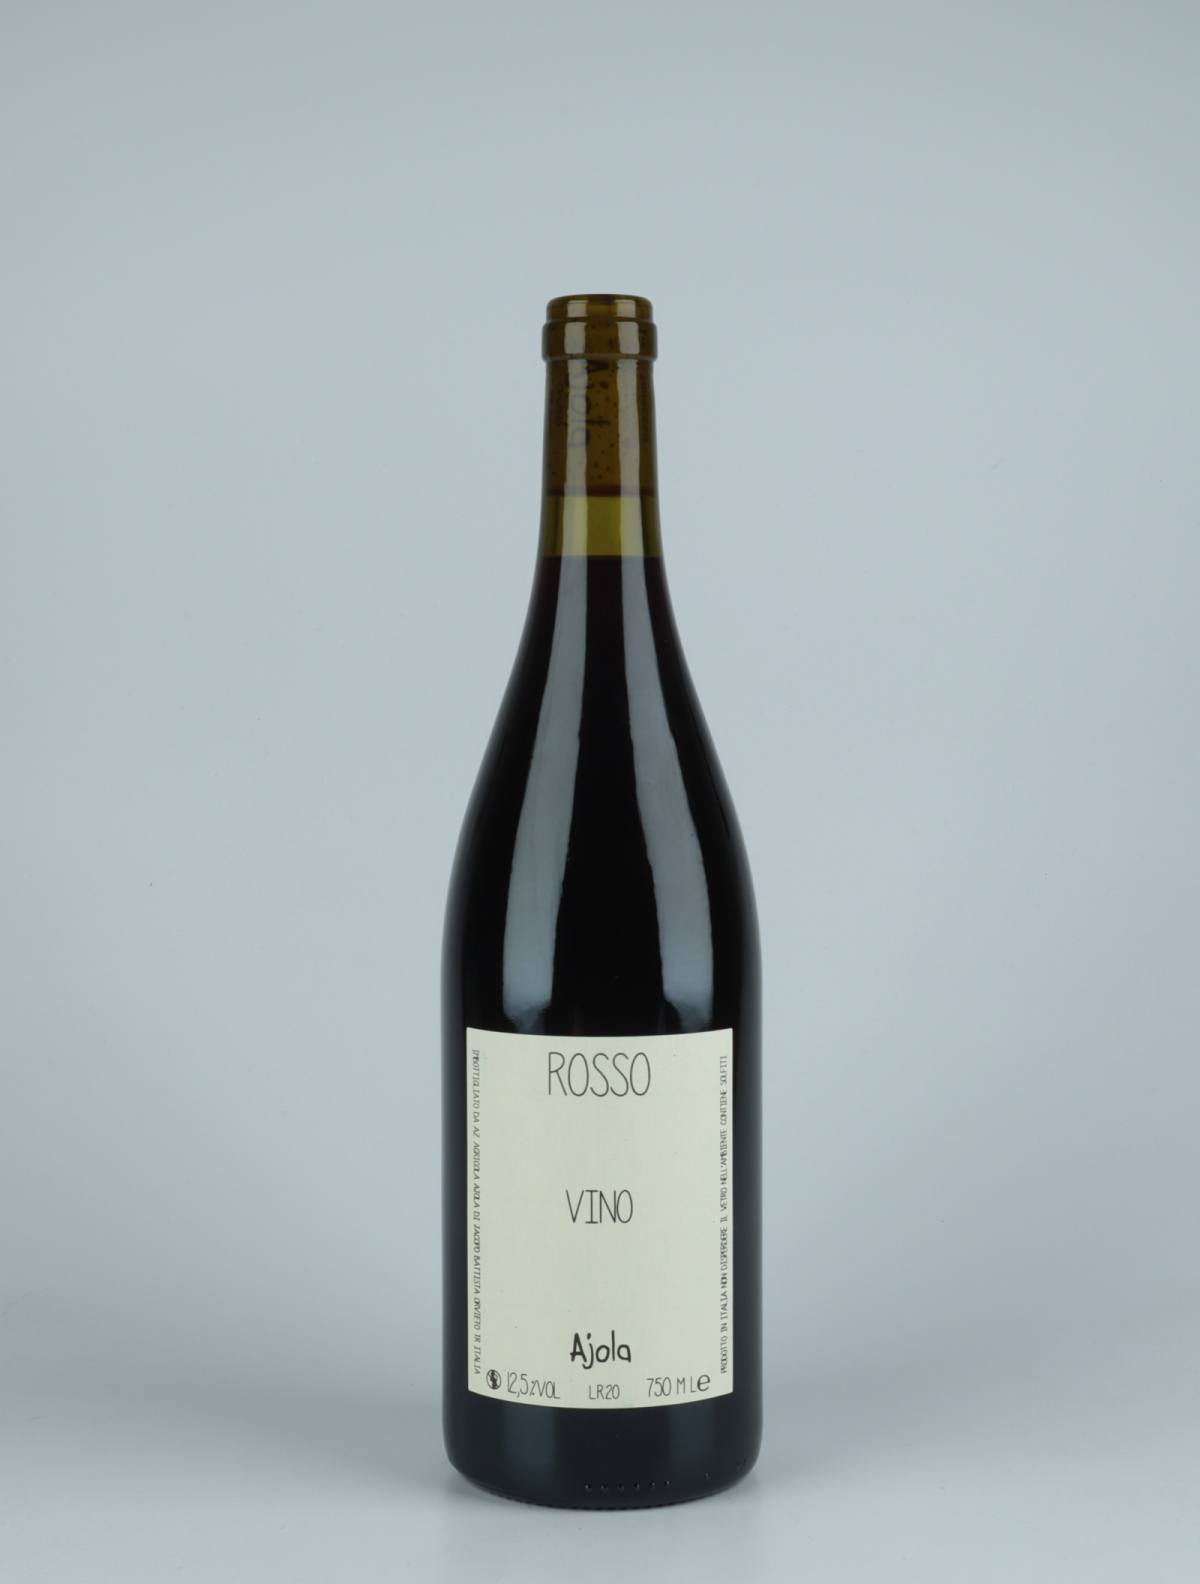 En flaske 2020 Vino Rosso Rødvin fra Ajola, Umbrien i Italien